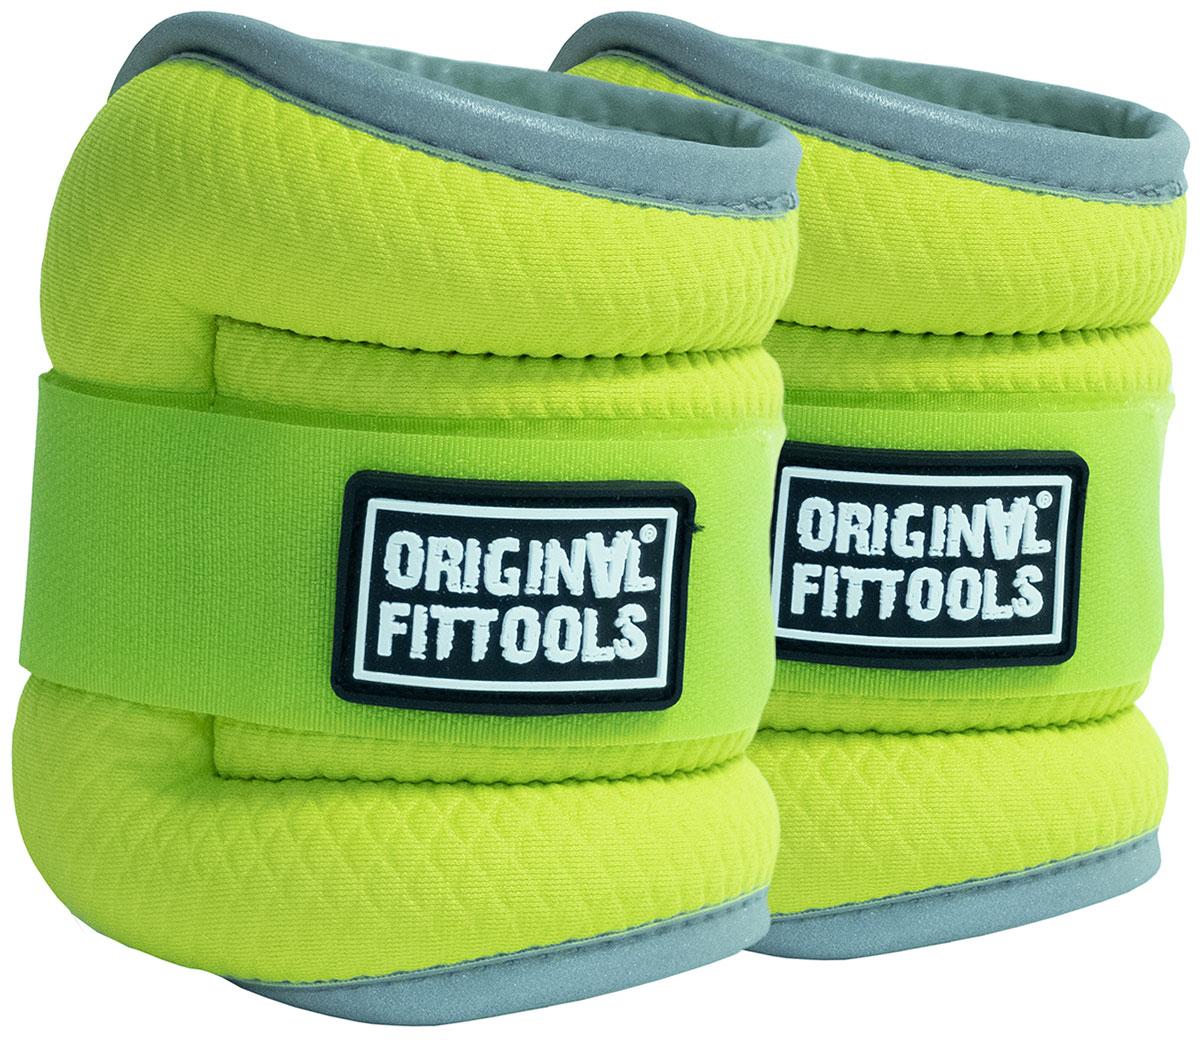 Комплект утяжелителей Original FitTools весом 1 кг пара, ярко-зеленые, FT-AW01-AG